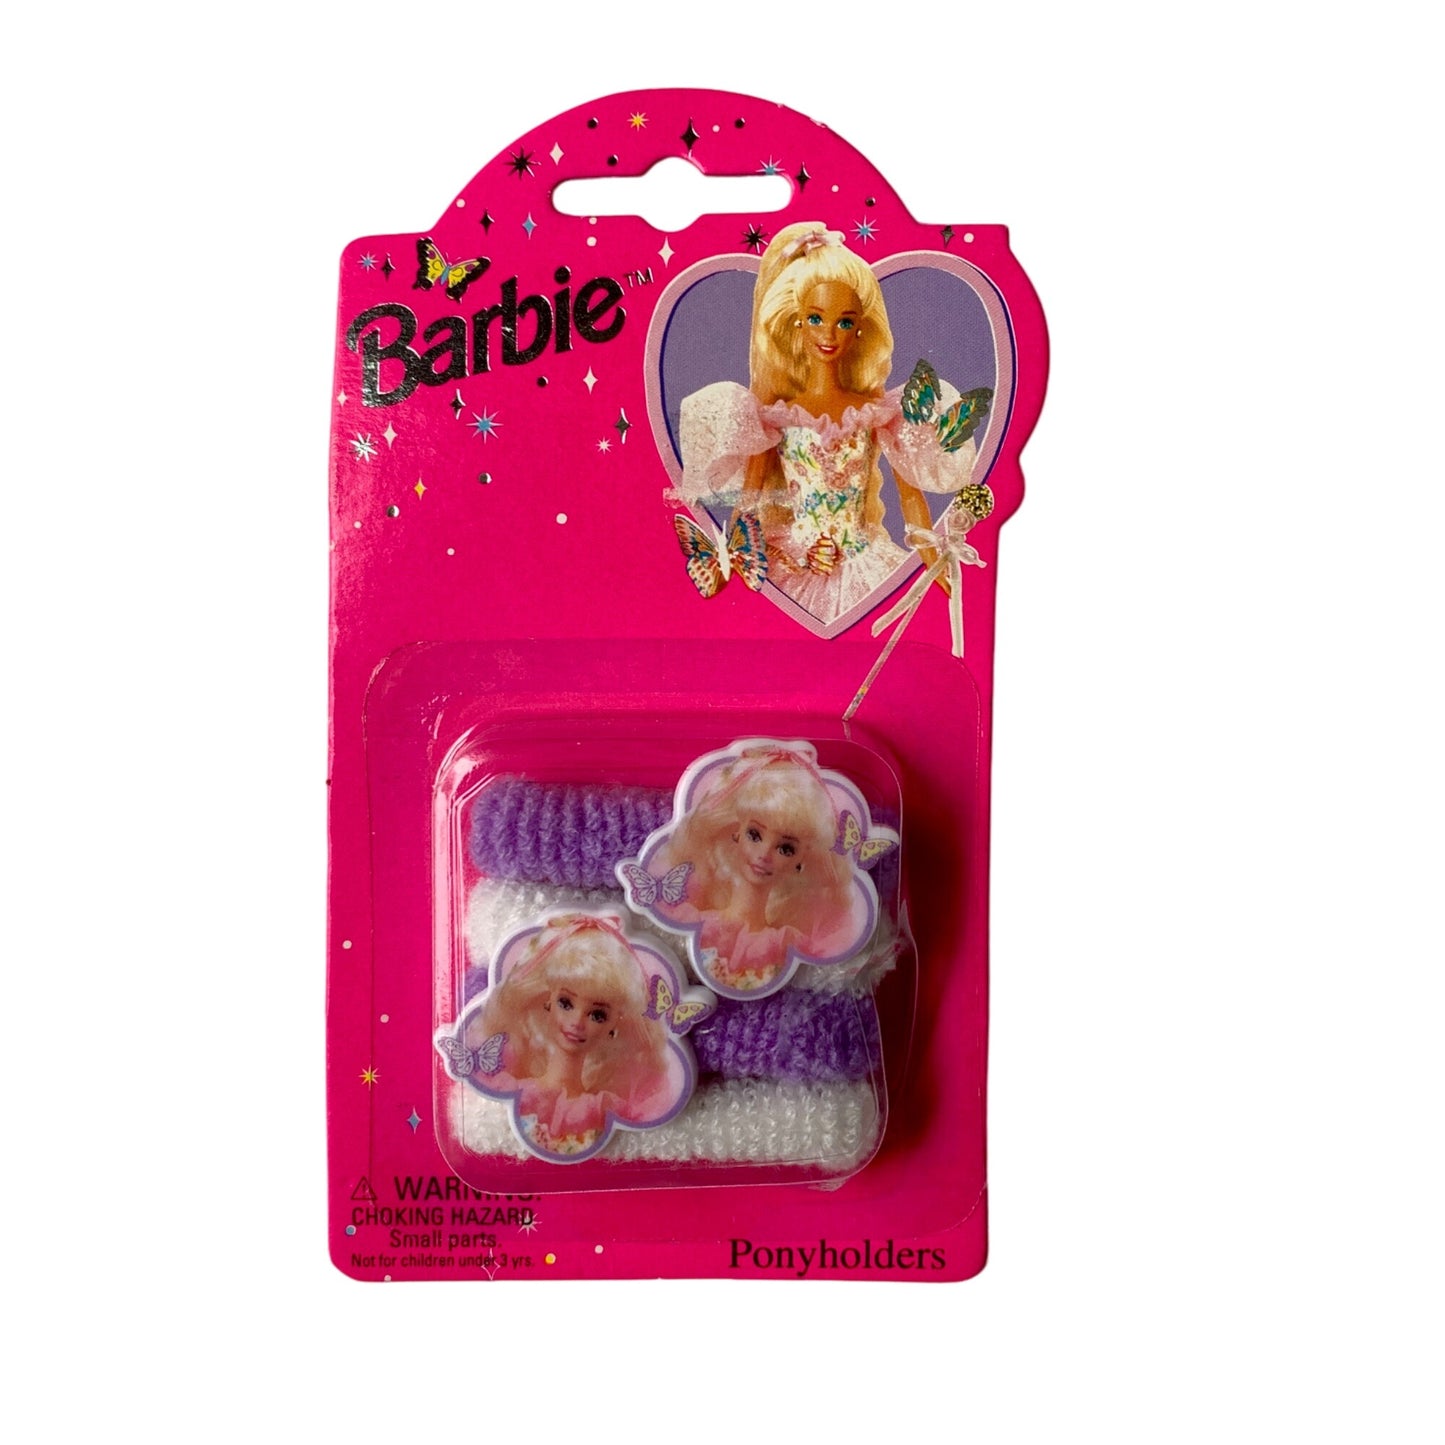 Barbie Ponyholders Vintage 1994 New in Package